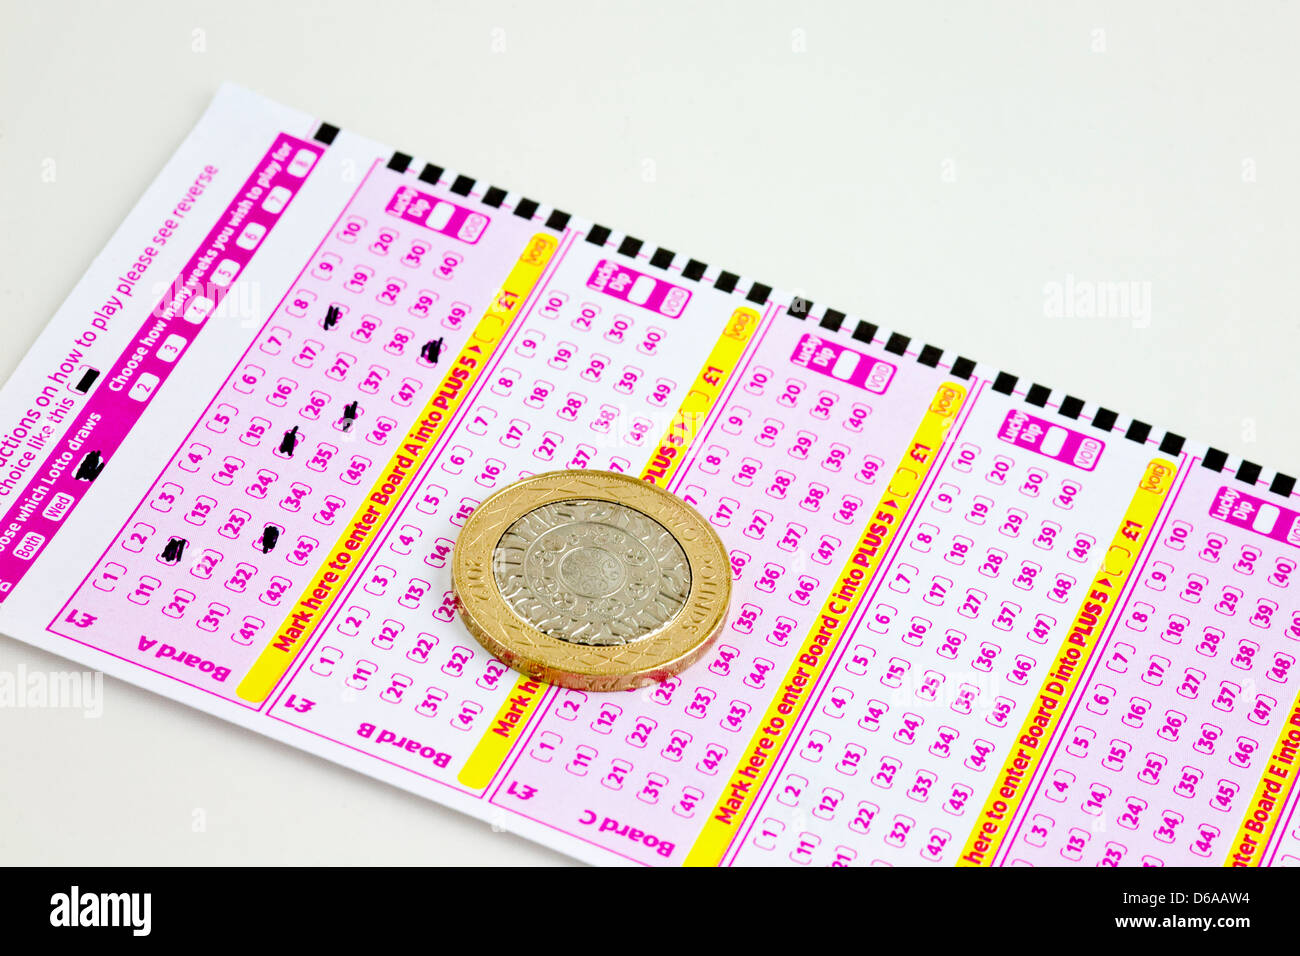 Billet de loterie britannique avec deux livres coin Banque D'Images